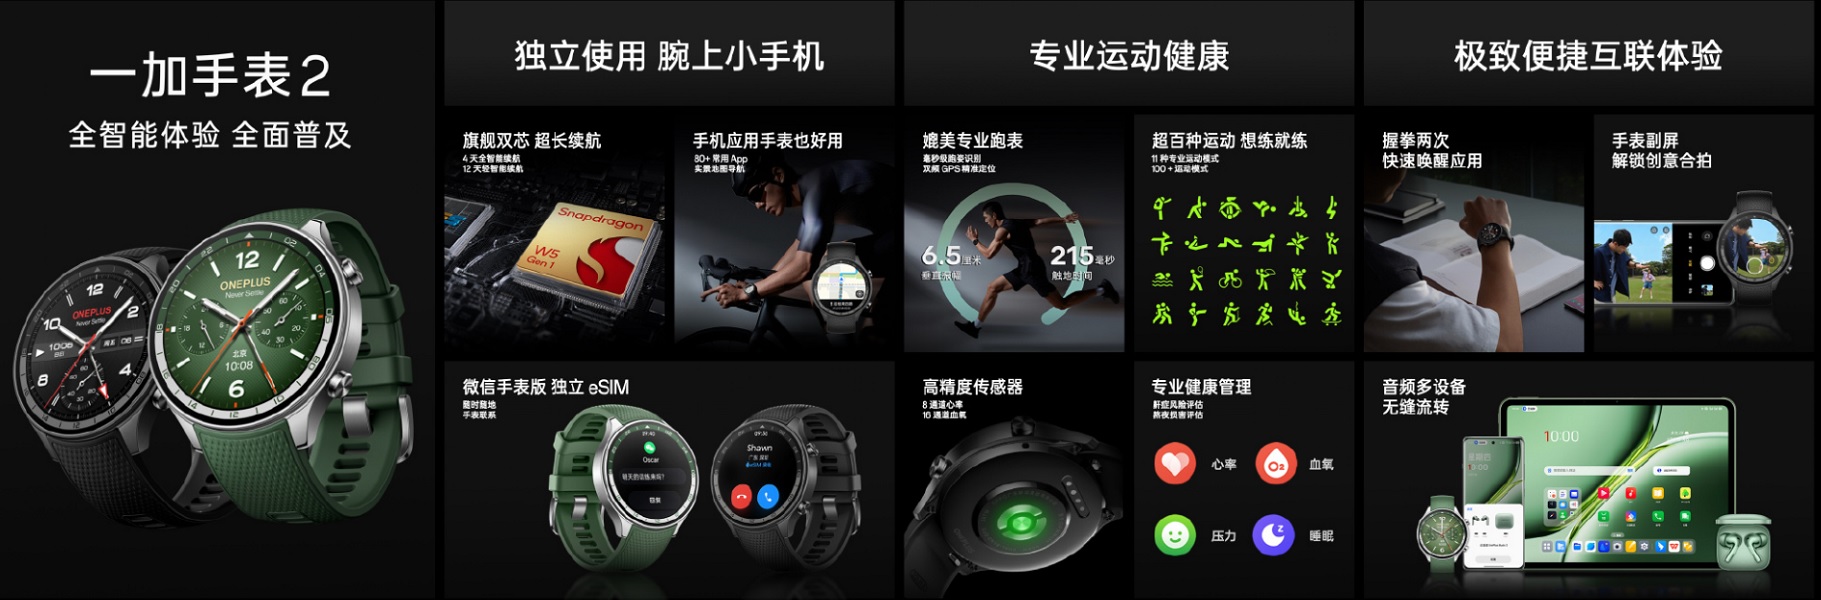 중국의 OnePlus Watch 2는 개선된 지도 탐색 기능, 정확한 센서, Android 및 iOS 지원 기능을 제공합니다.